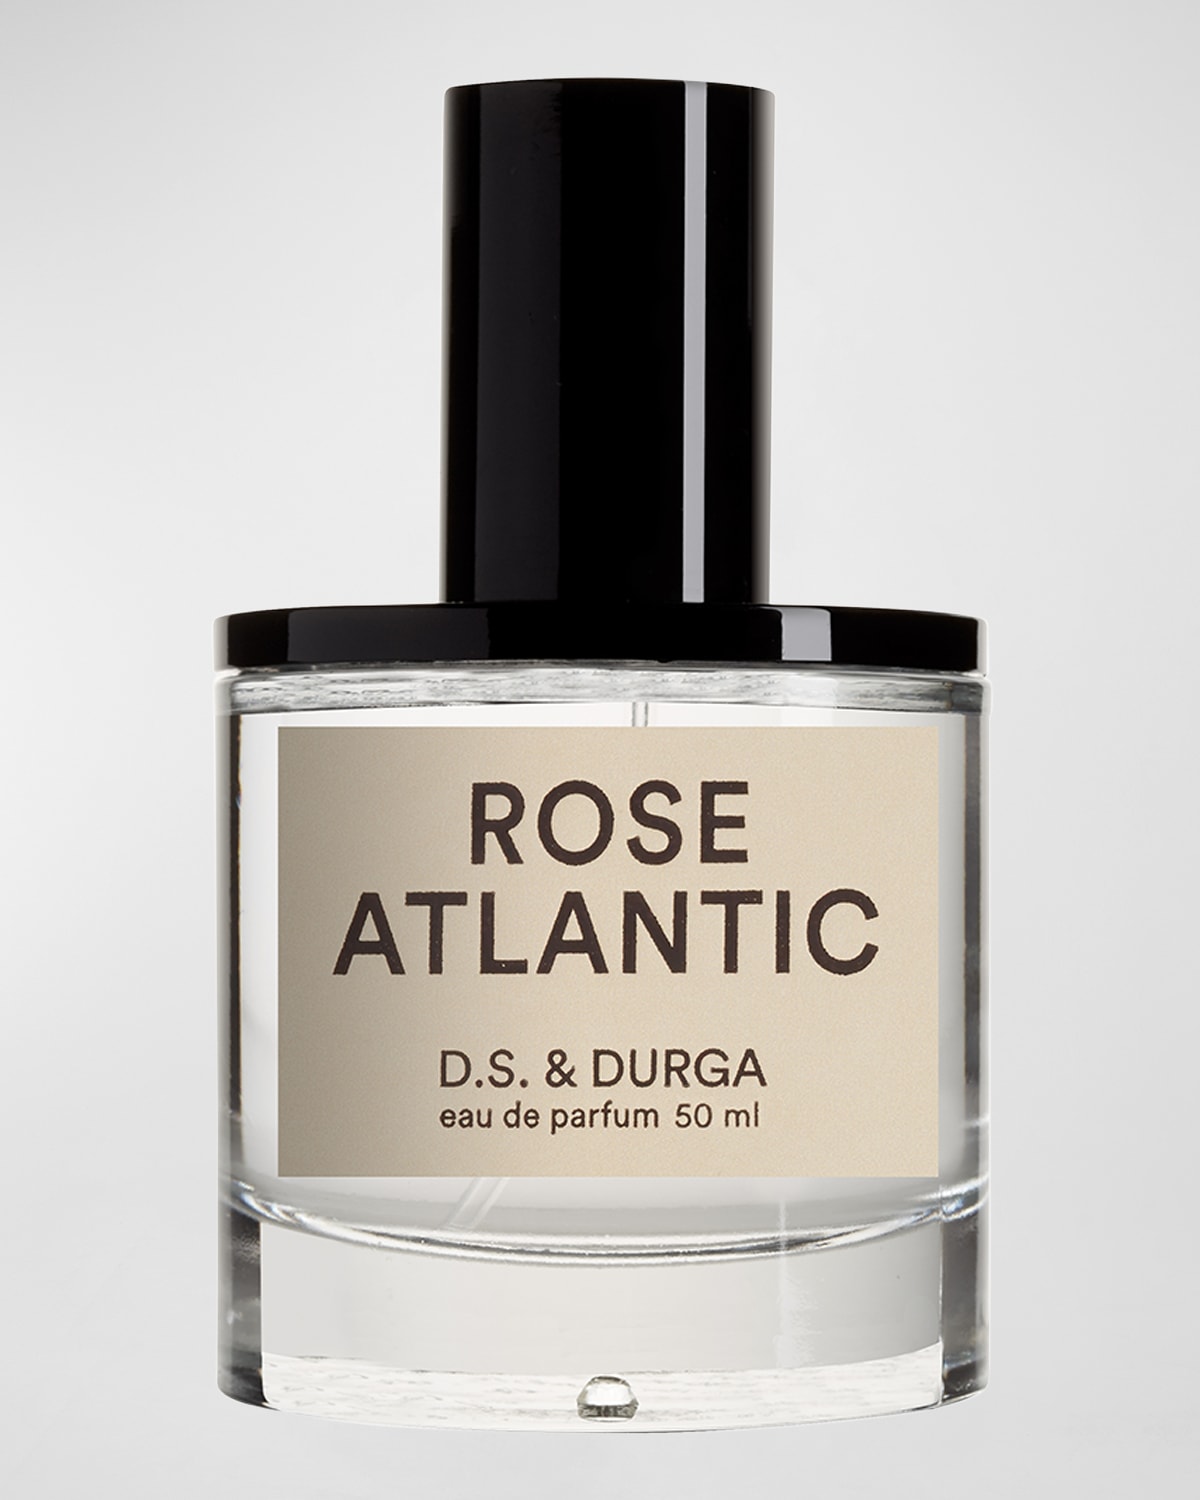 D.S. & DURGA Rose Atlantic Eau de Parfum, 1.7 oz.